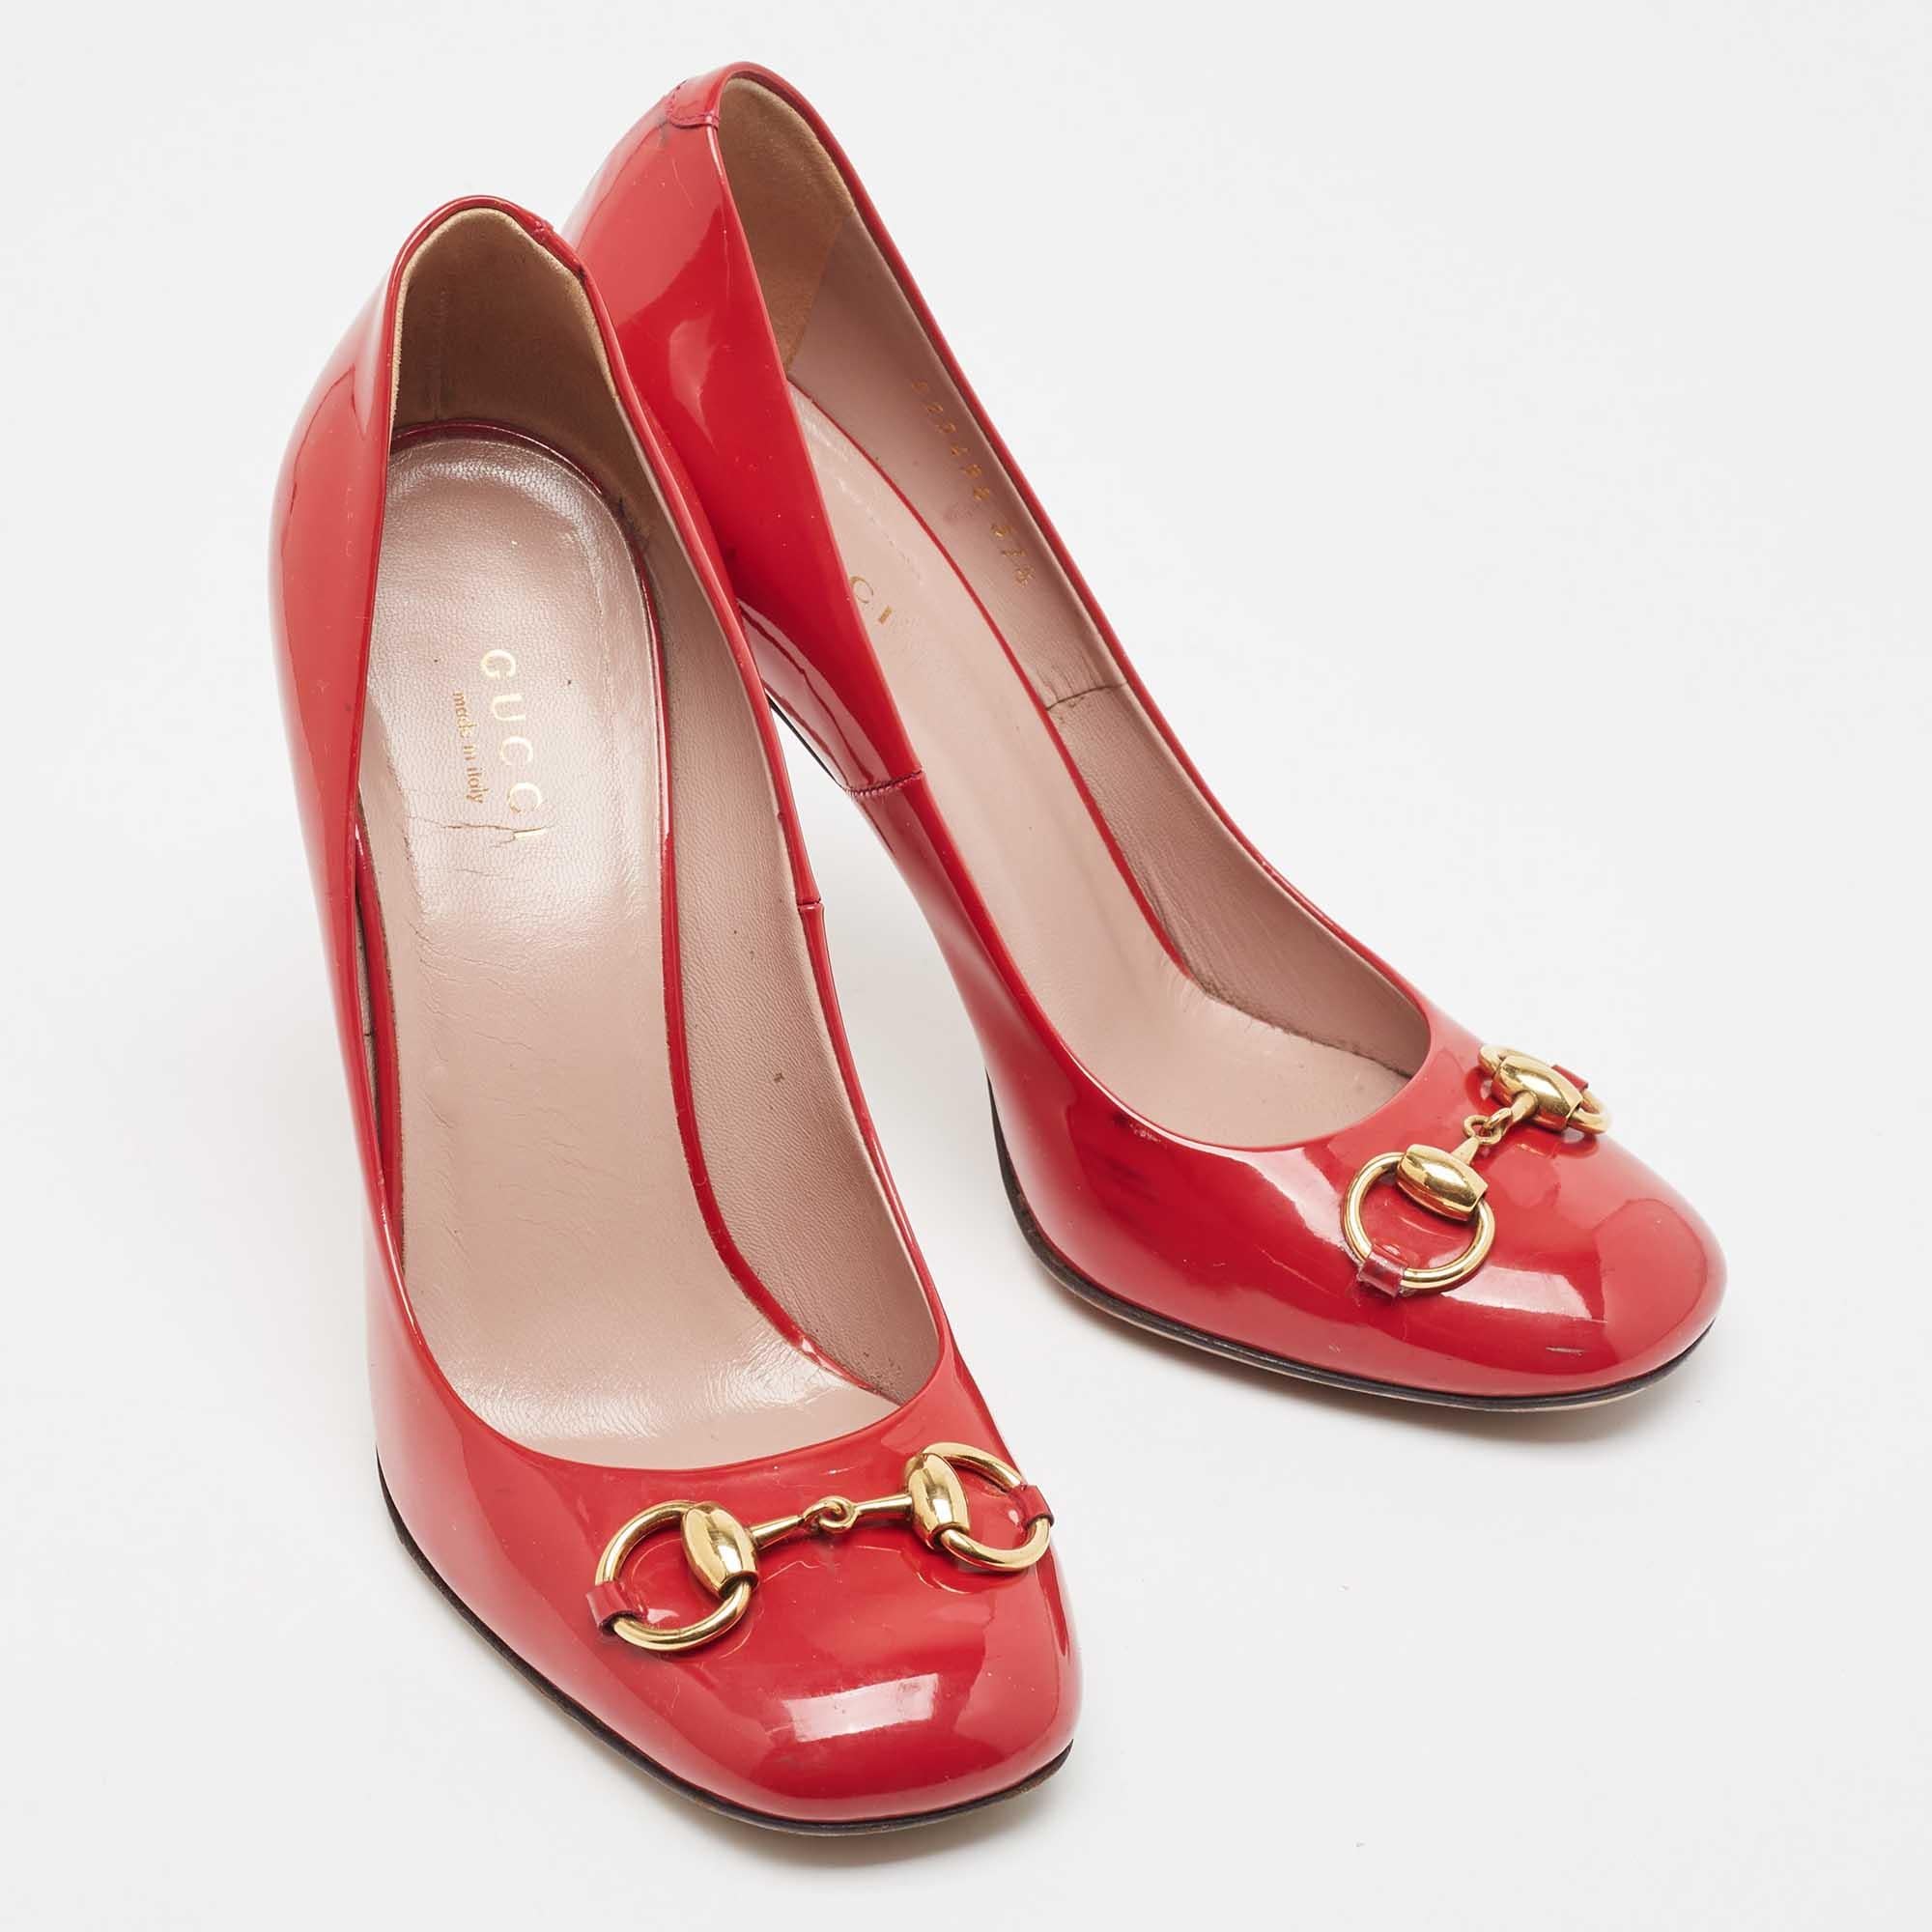 Gucci escarpins à bout carré en cuir verni rouge « Jolene Horsebit », taille 37,5 Pour femmes en vente